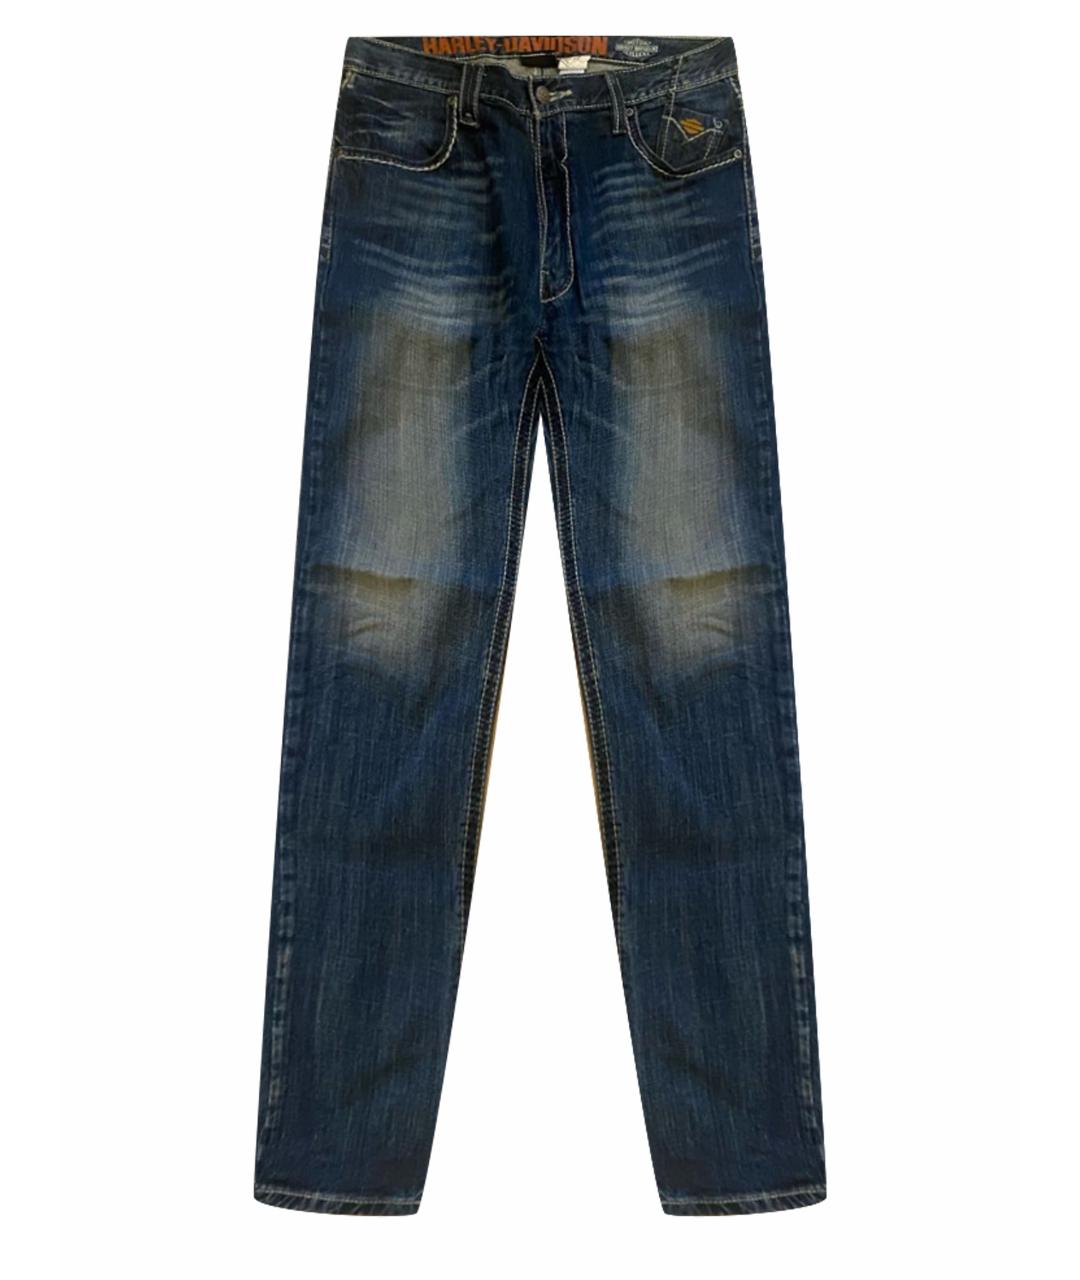 Harley Davidson Синие прямые джинсы, фото 1